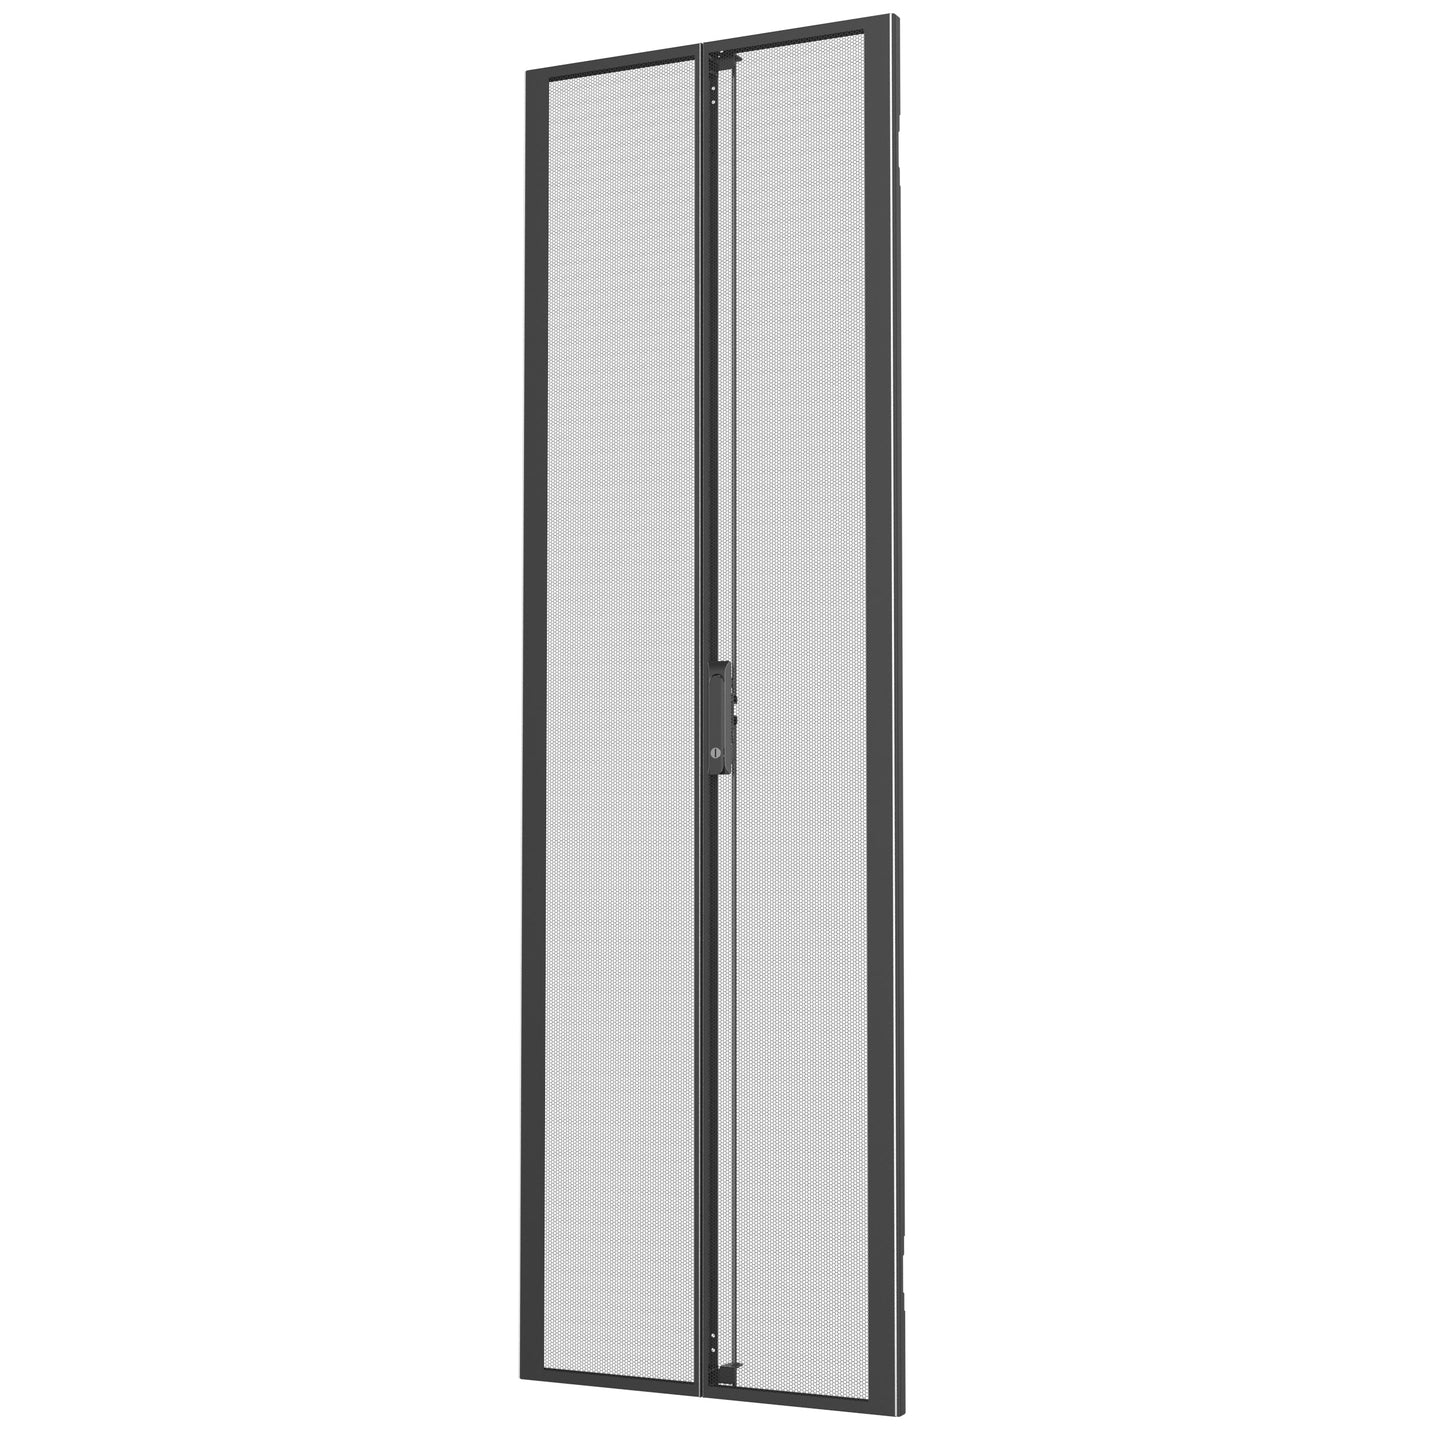 Vertiv Vra6005 Rack Accessory Double Door